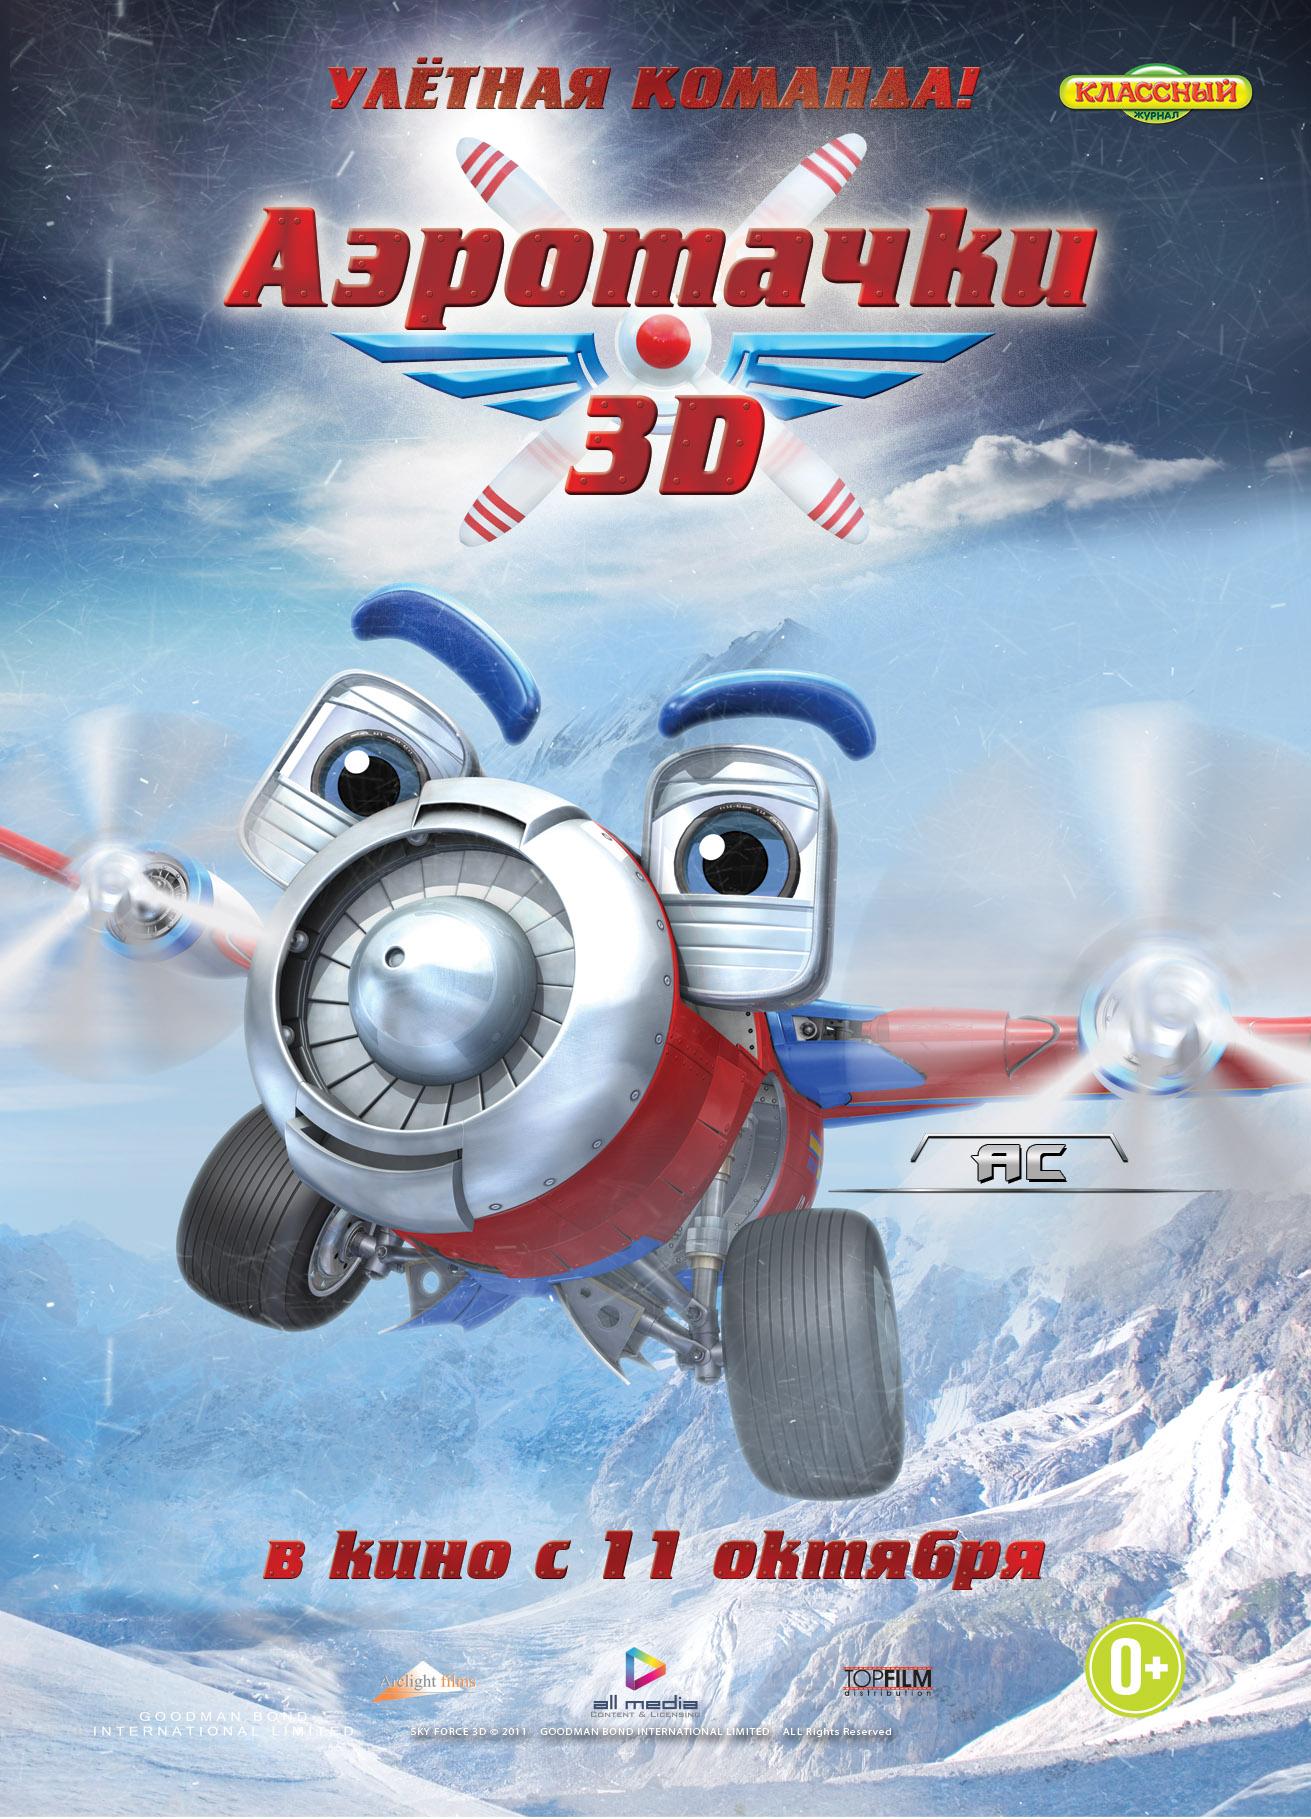 Постер фильма Аэротачки 3D | Sky Force 3D